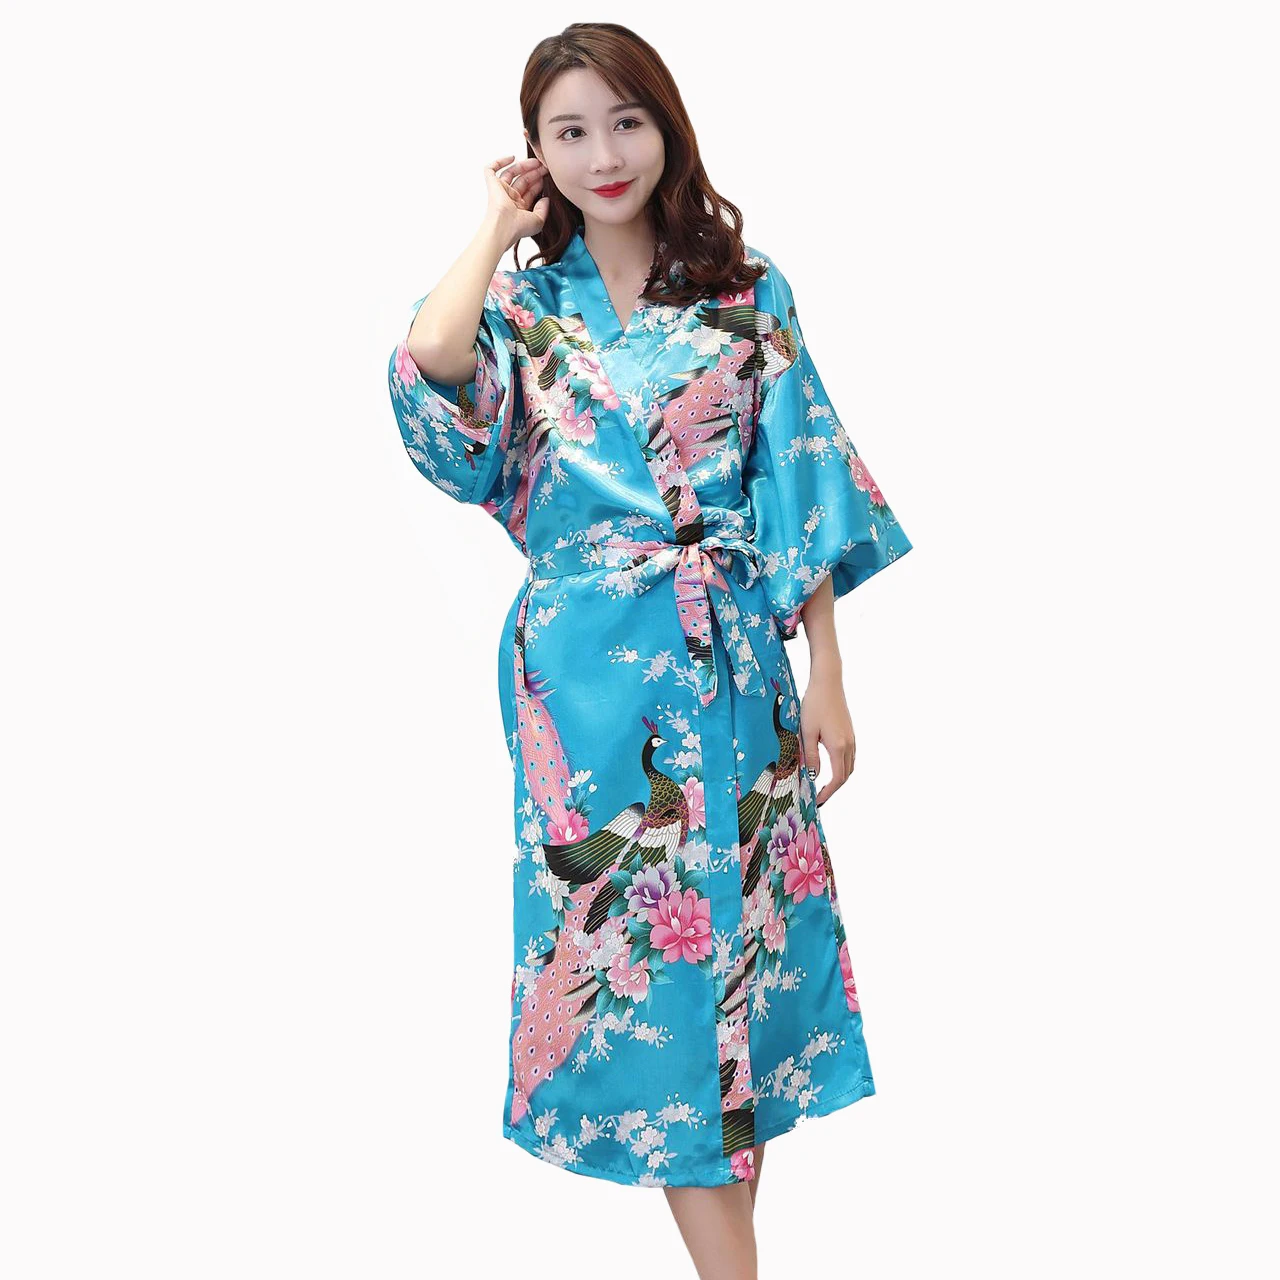 Женская мода кимоно халат платье принт Павлин невесты свадебное леди сексуальная три четверти рукав пижамы S-3XL